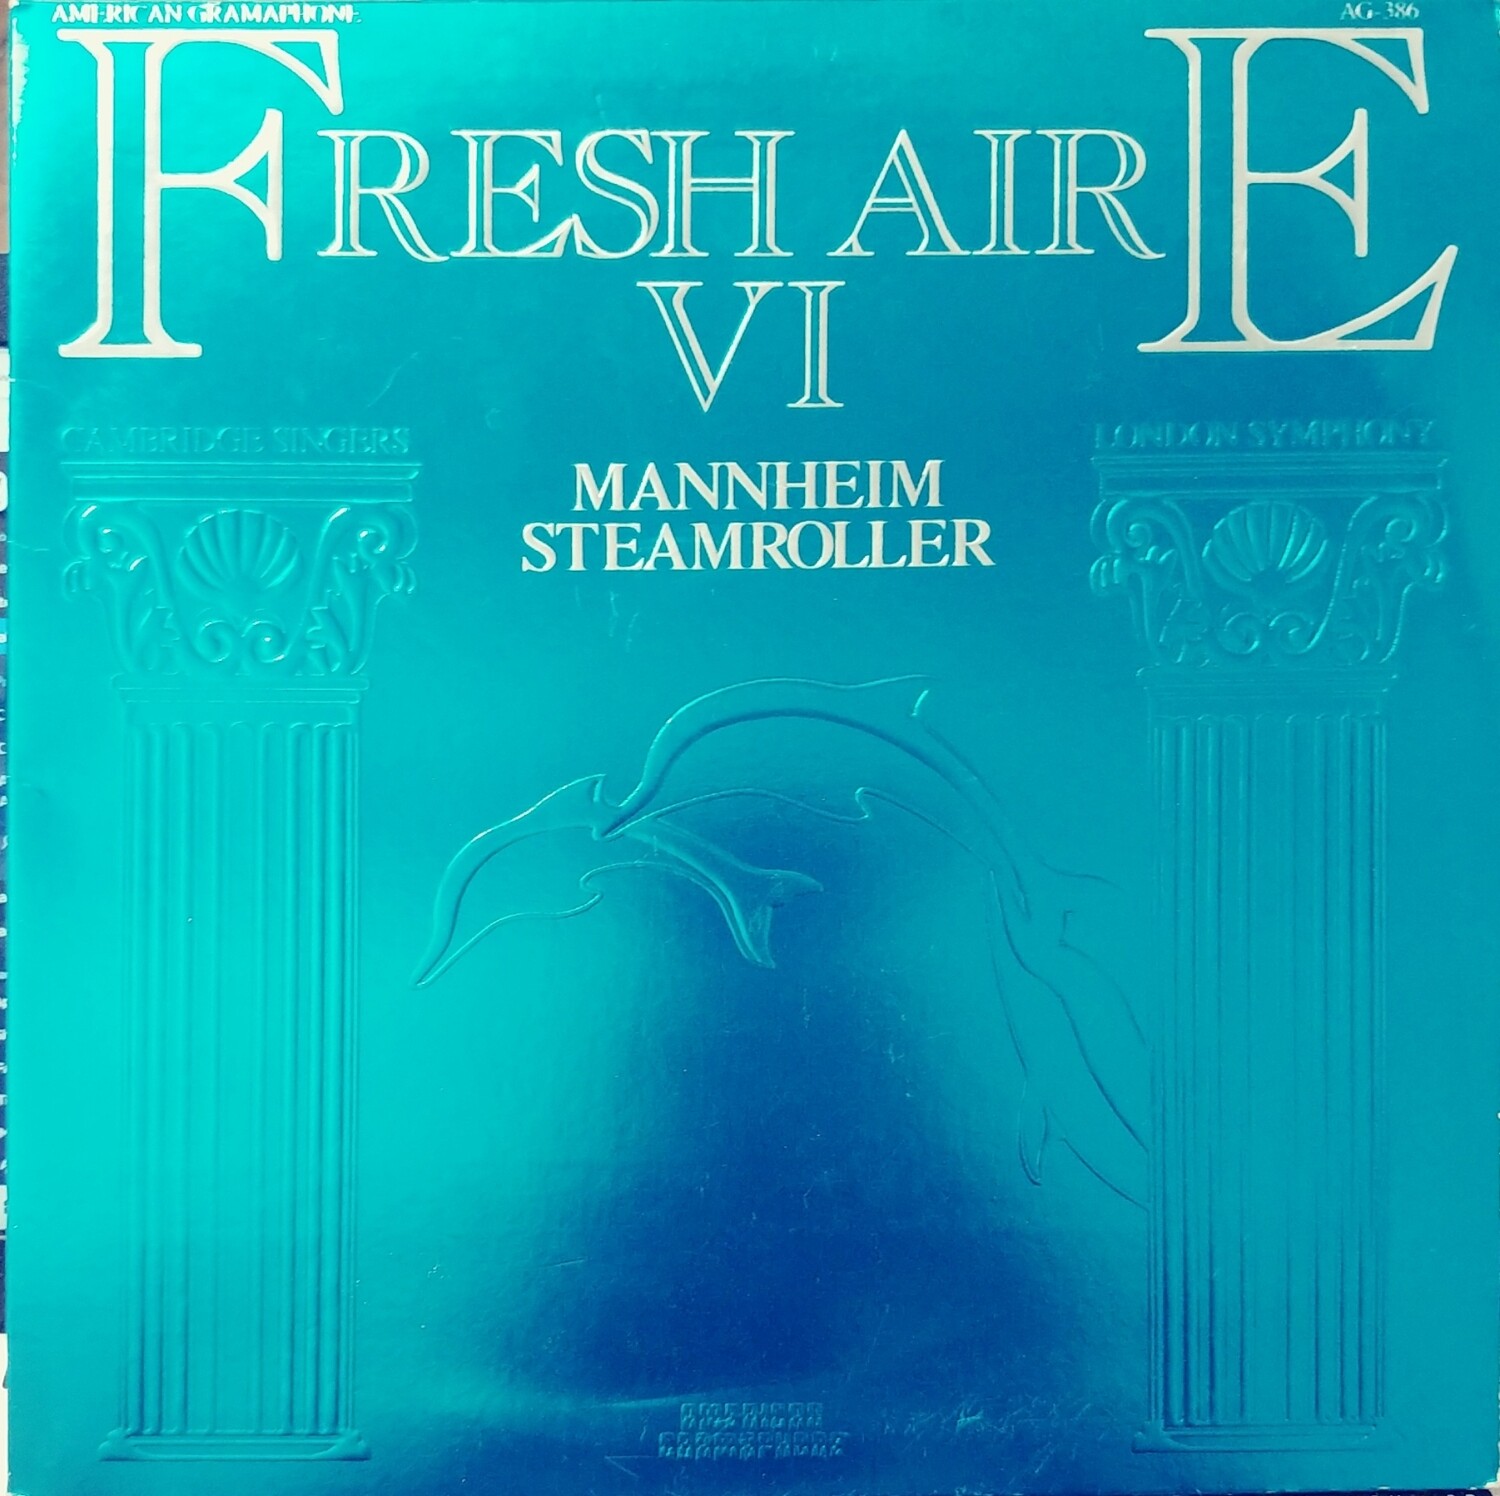 Manheim Steamroller - Fresh Aire VI